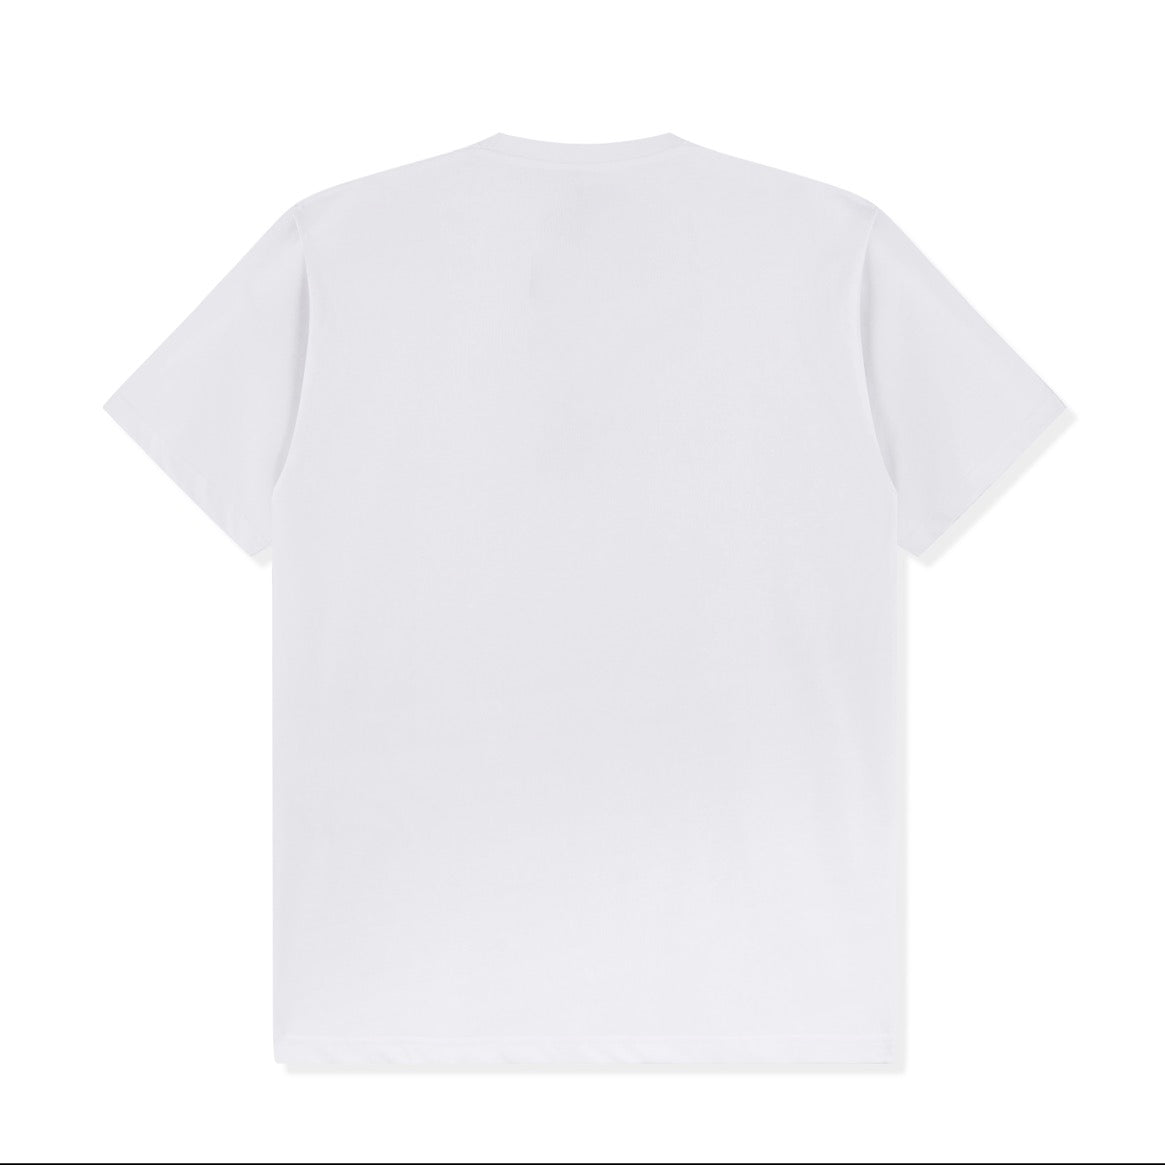 White T-shirt - Size S